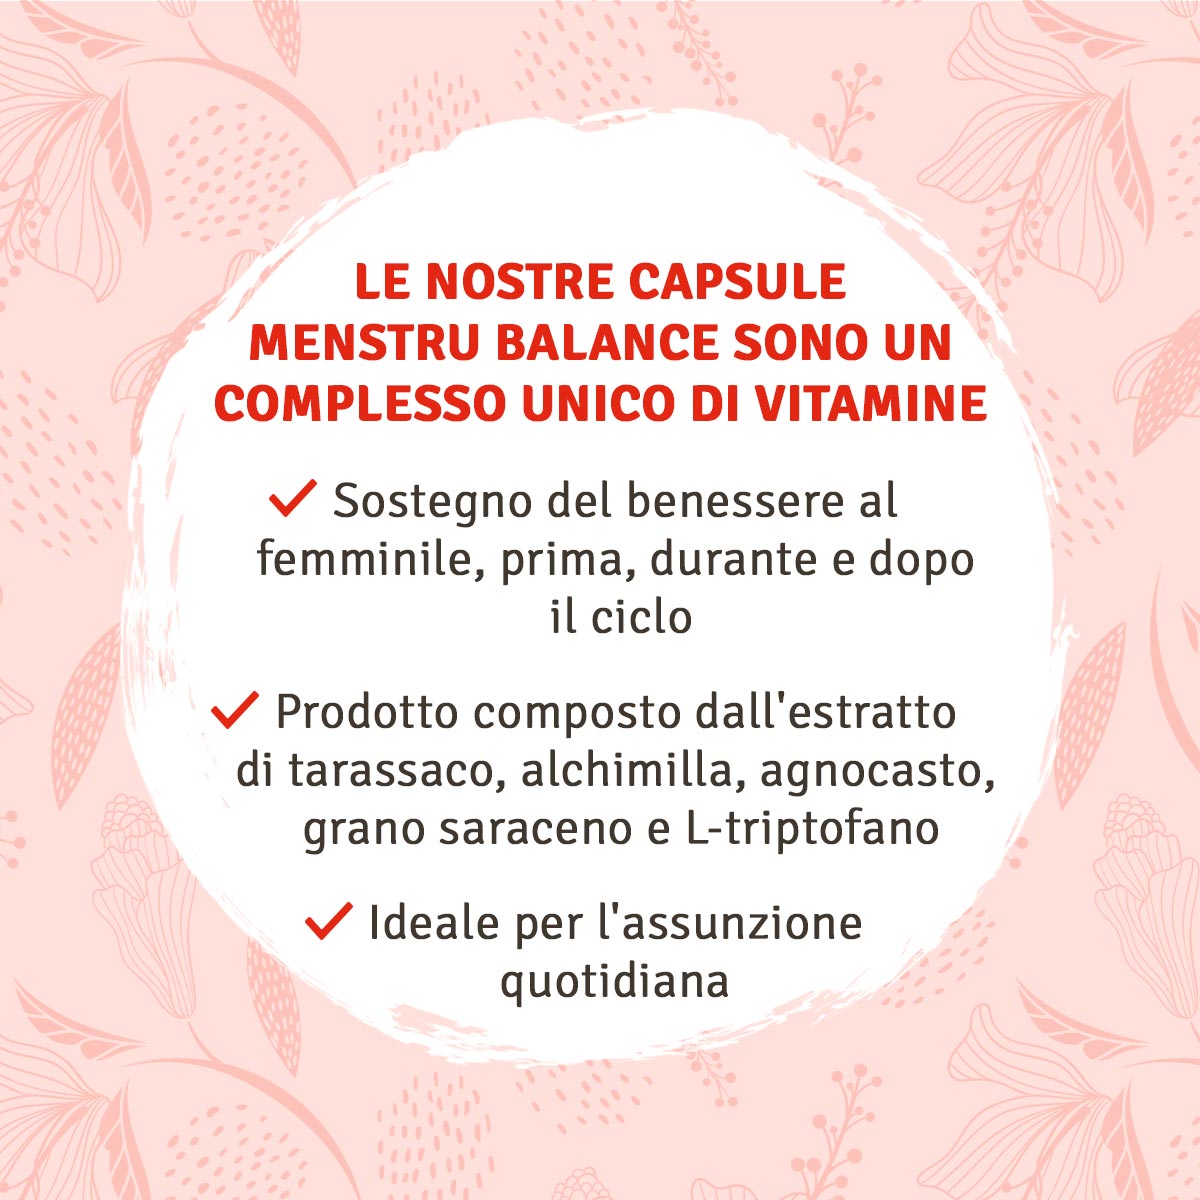 Menstru® Balance: vitamina B6, agnocasto, alchimilla, L-triptofano e tarassaco